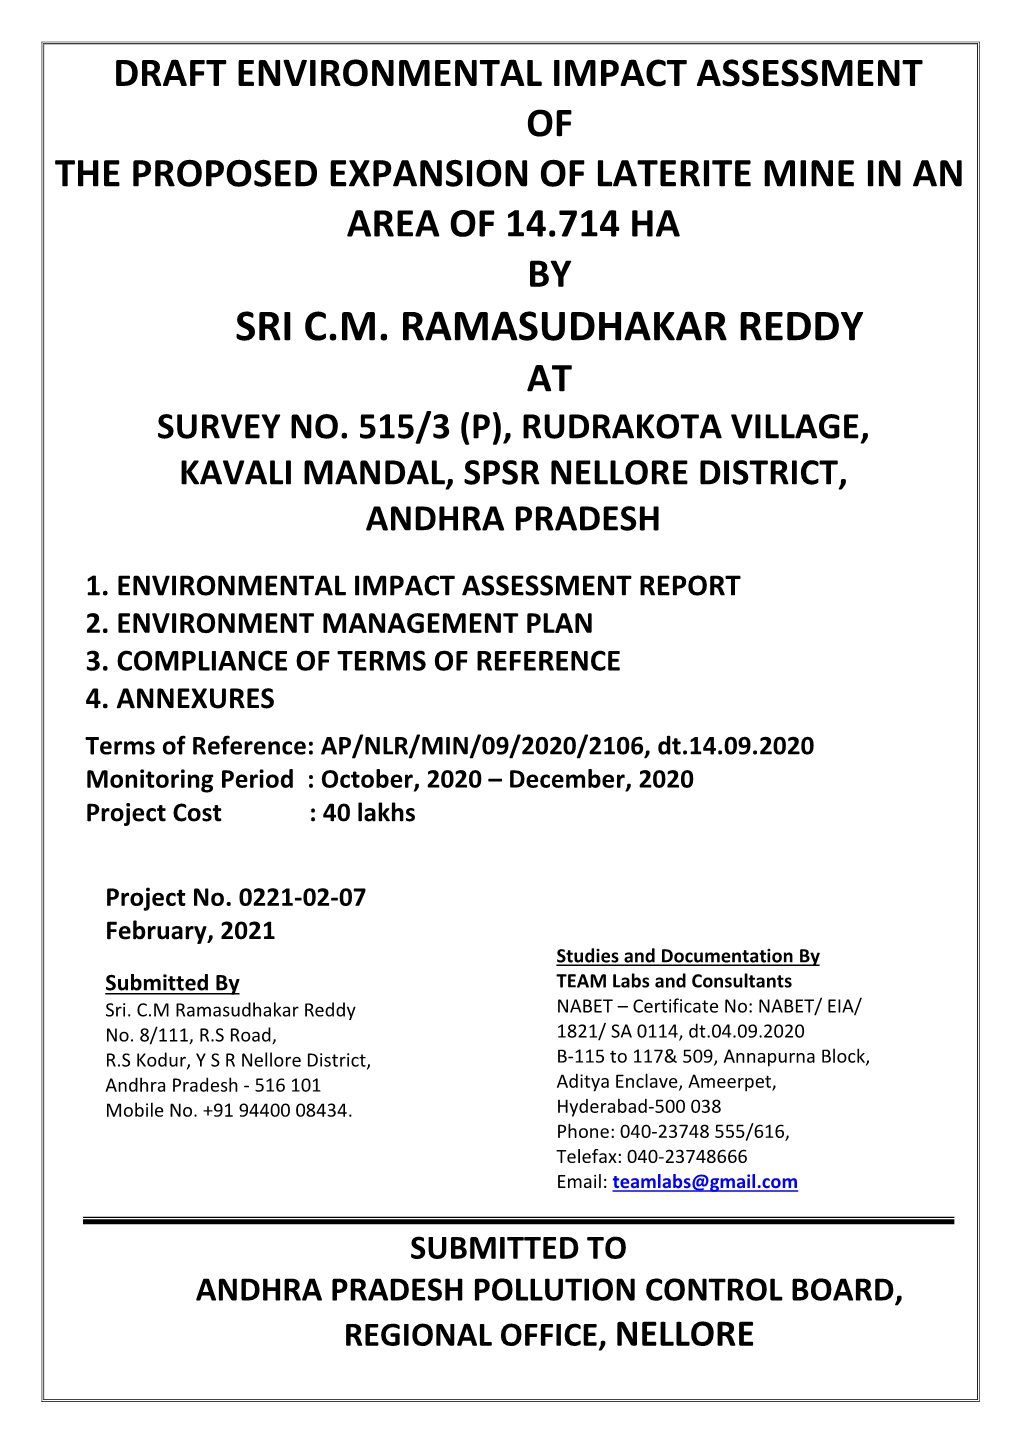 Sri C.M. Ramasudhakar Reddy at Survey No